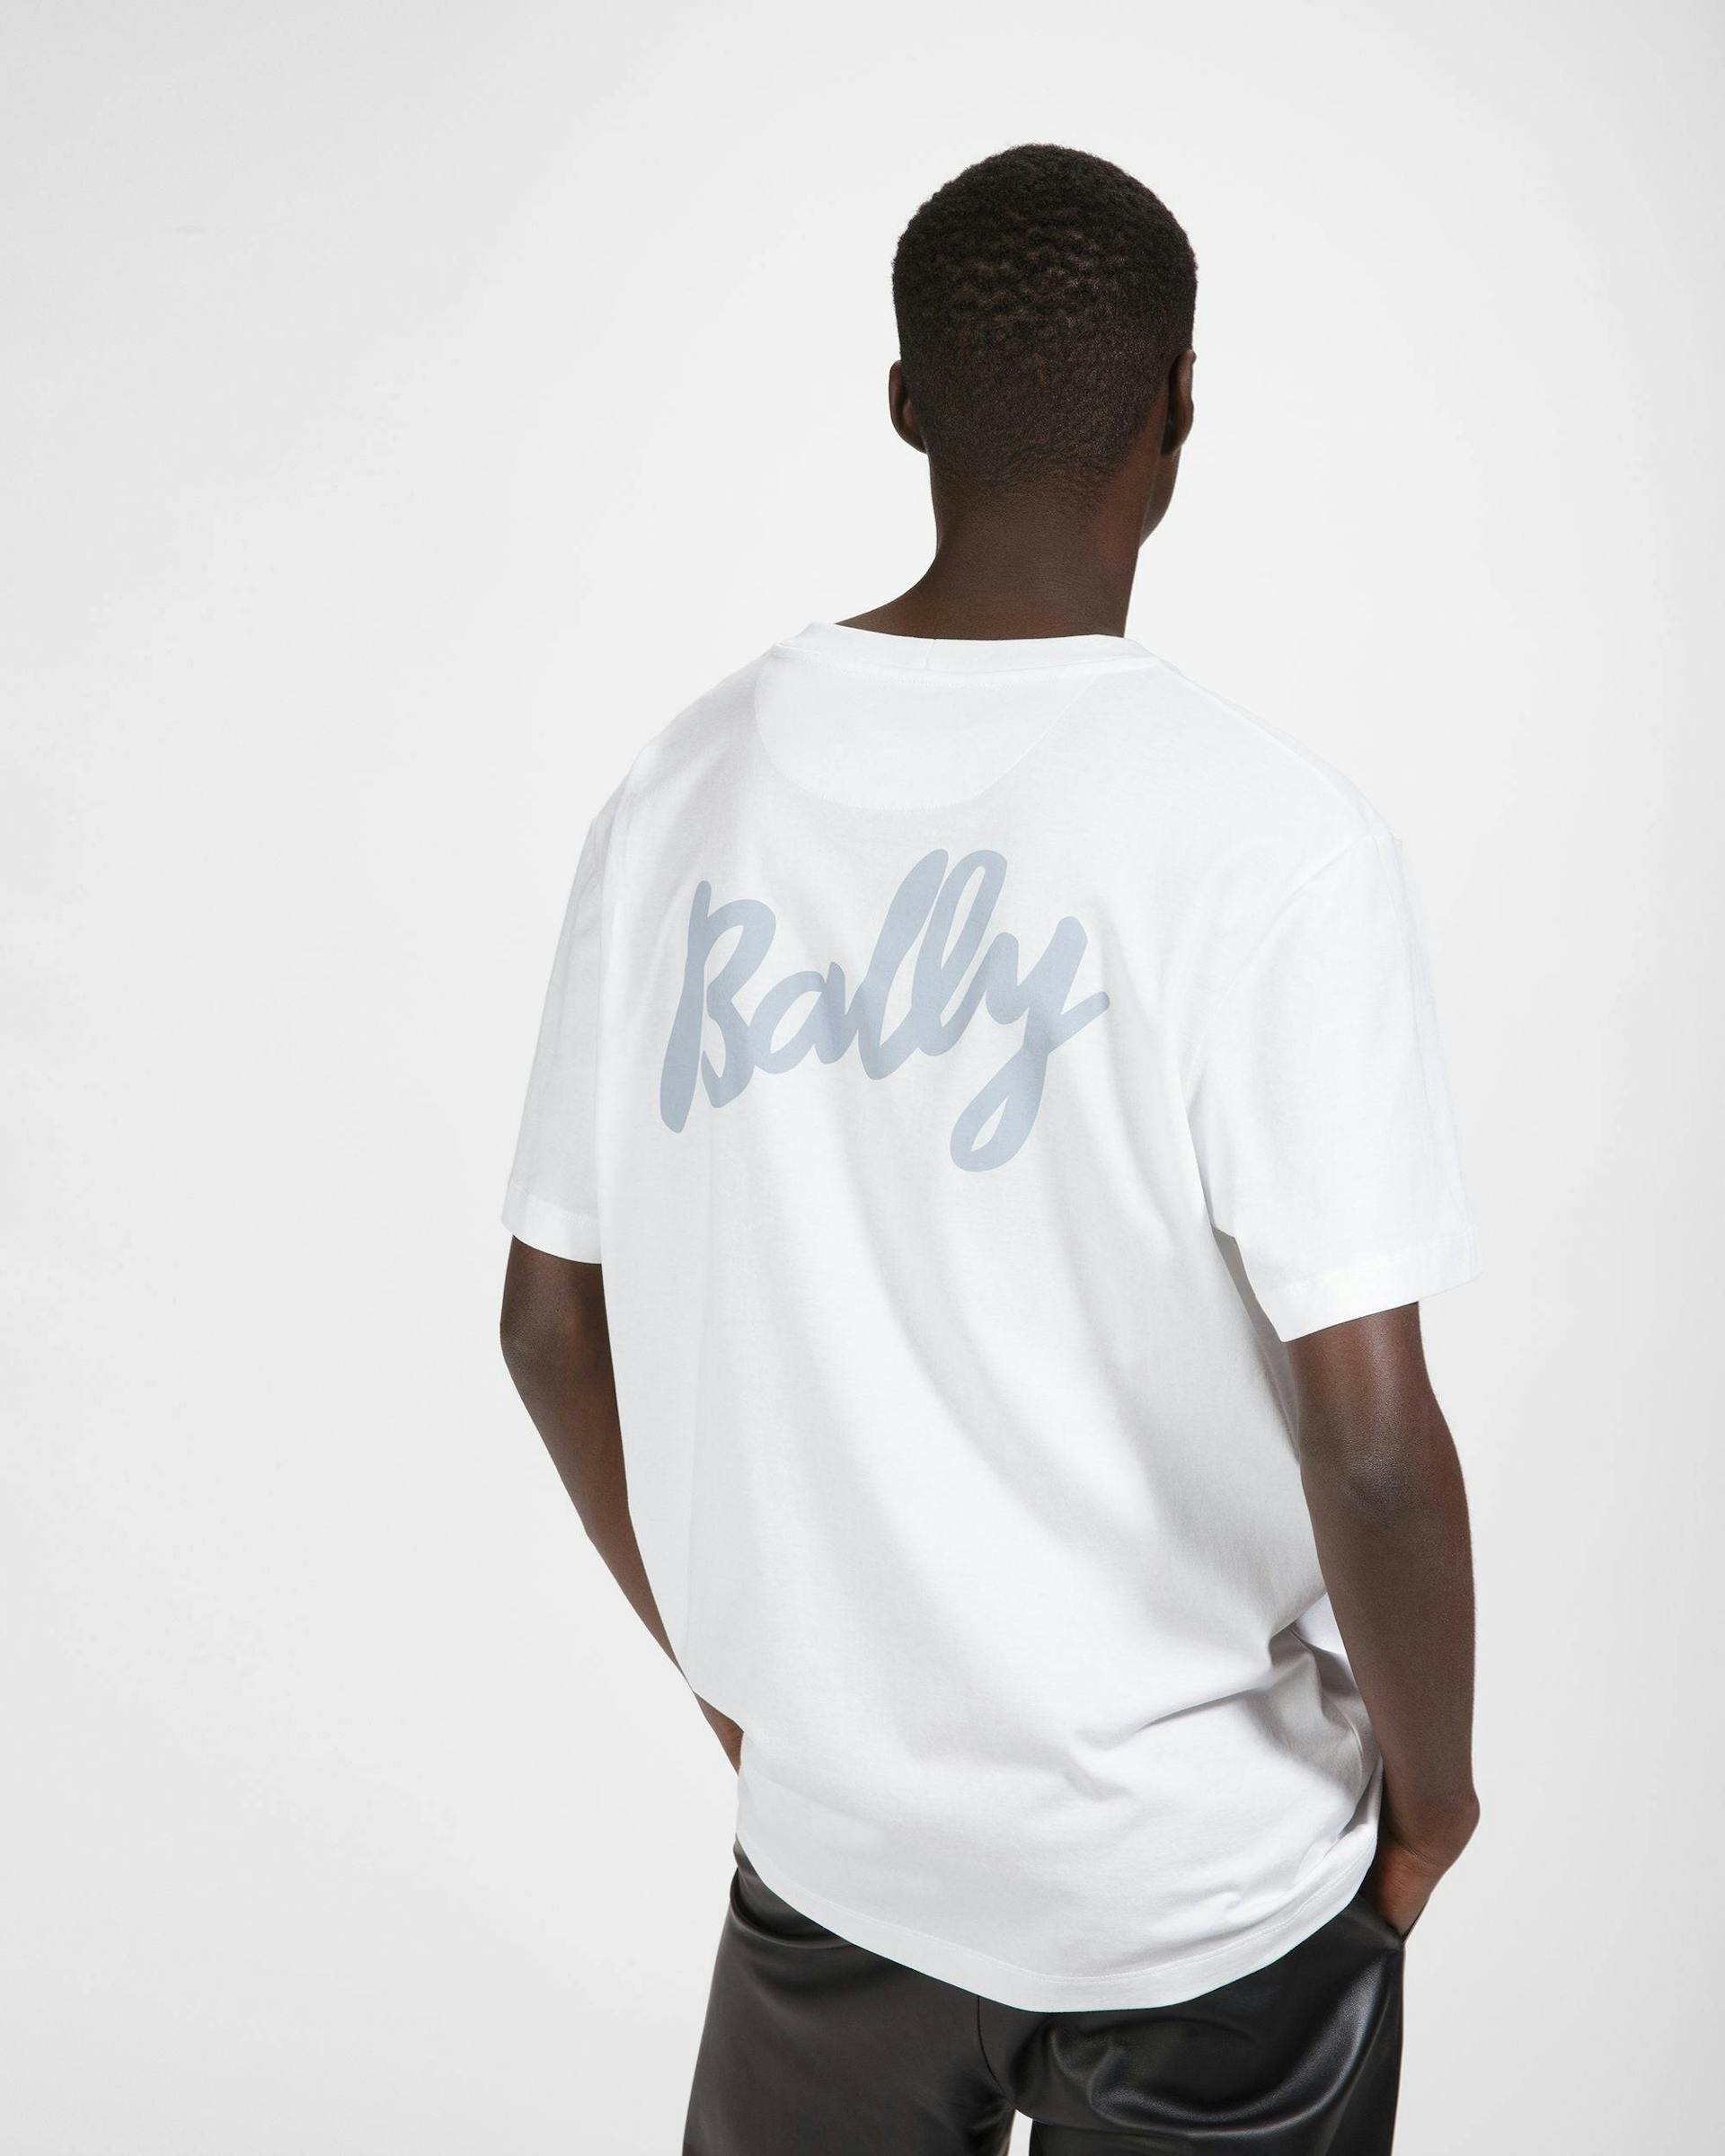 T-Shirt Aus Baumwolle In Weiß Und Hellblau - Herren - Bally - 05